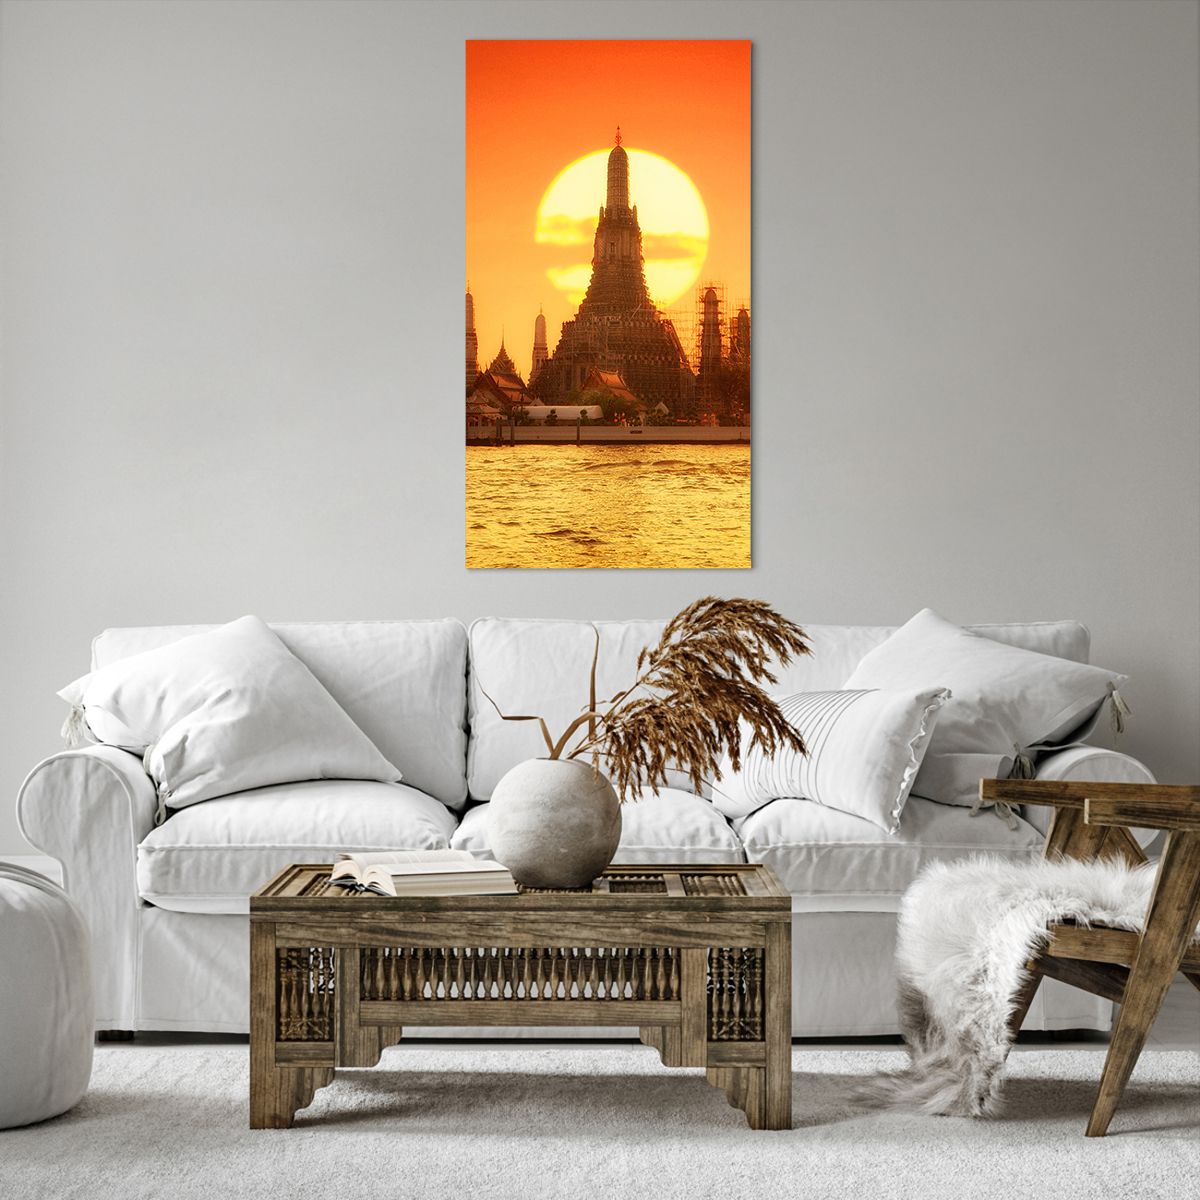 Obrazy na płótnie Bangkok, Obrazy na płótnie Świątynia Świtu, Obrazy na płótnie Tajlandia, Obrazy na płótnie Słońce, Obrazy na płótnie Buddyzm